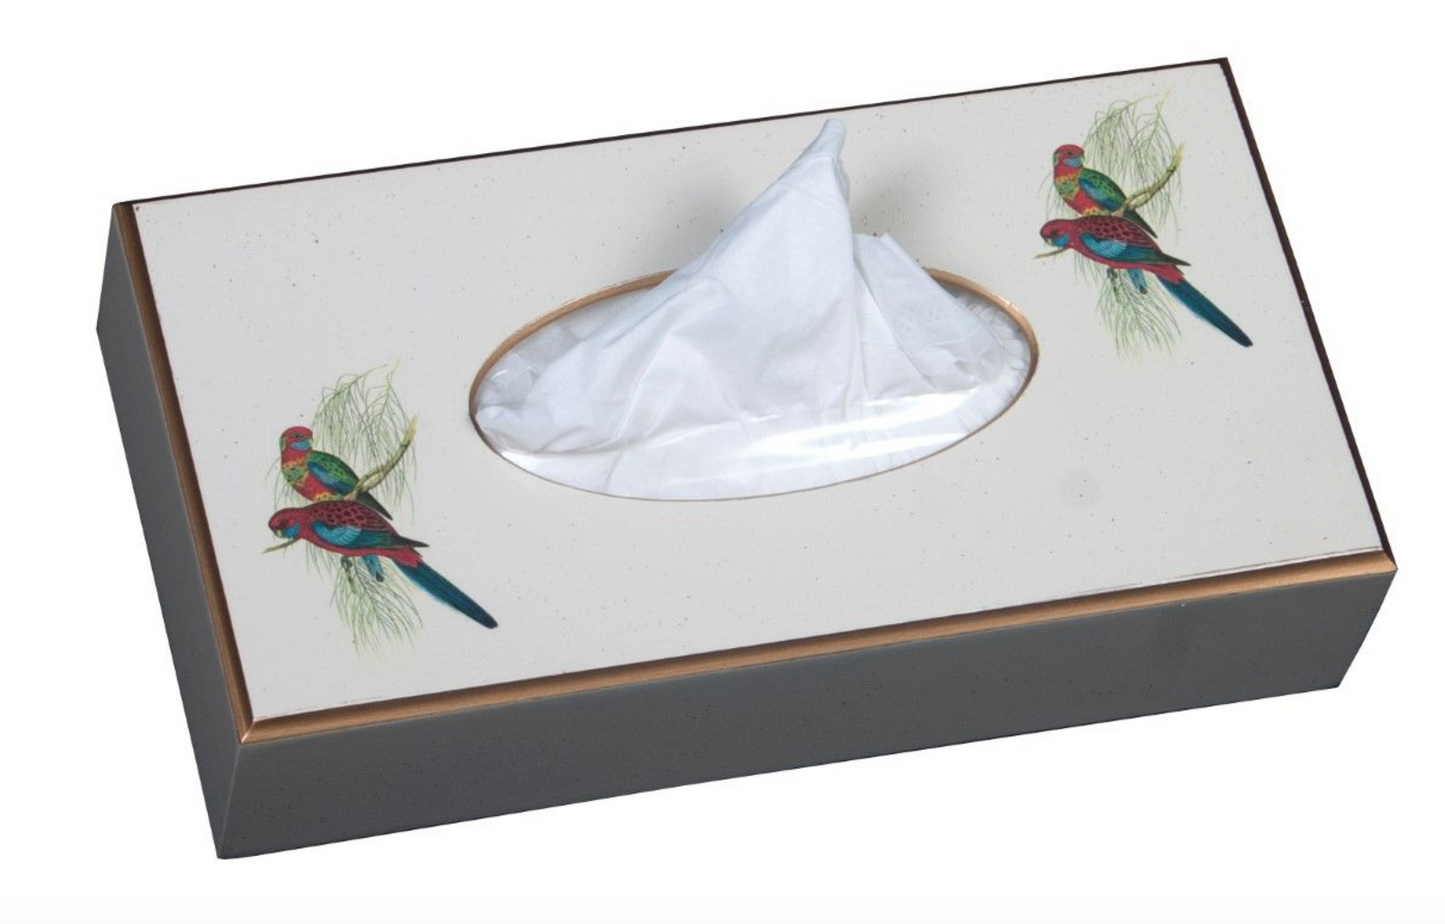 Rectangular Tissue Box Cover: Pair of Parrots